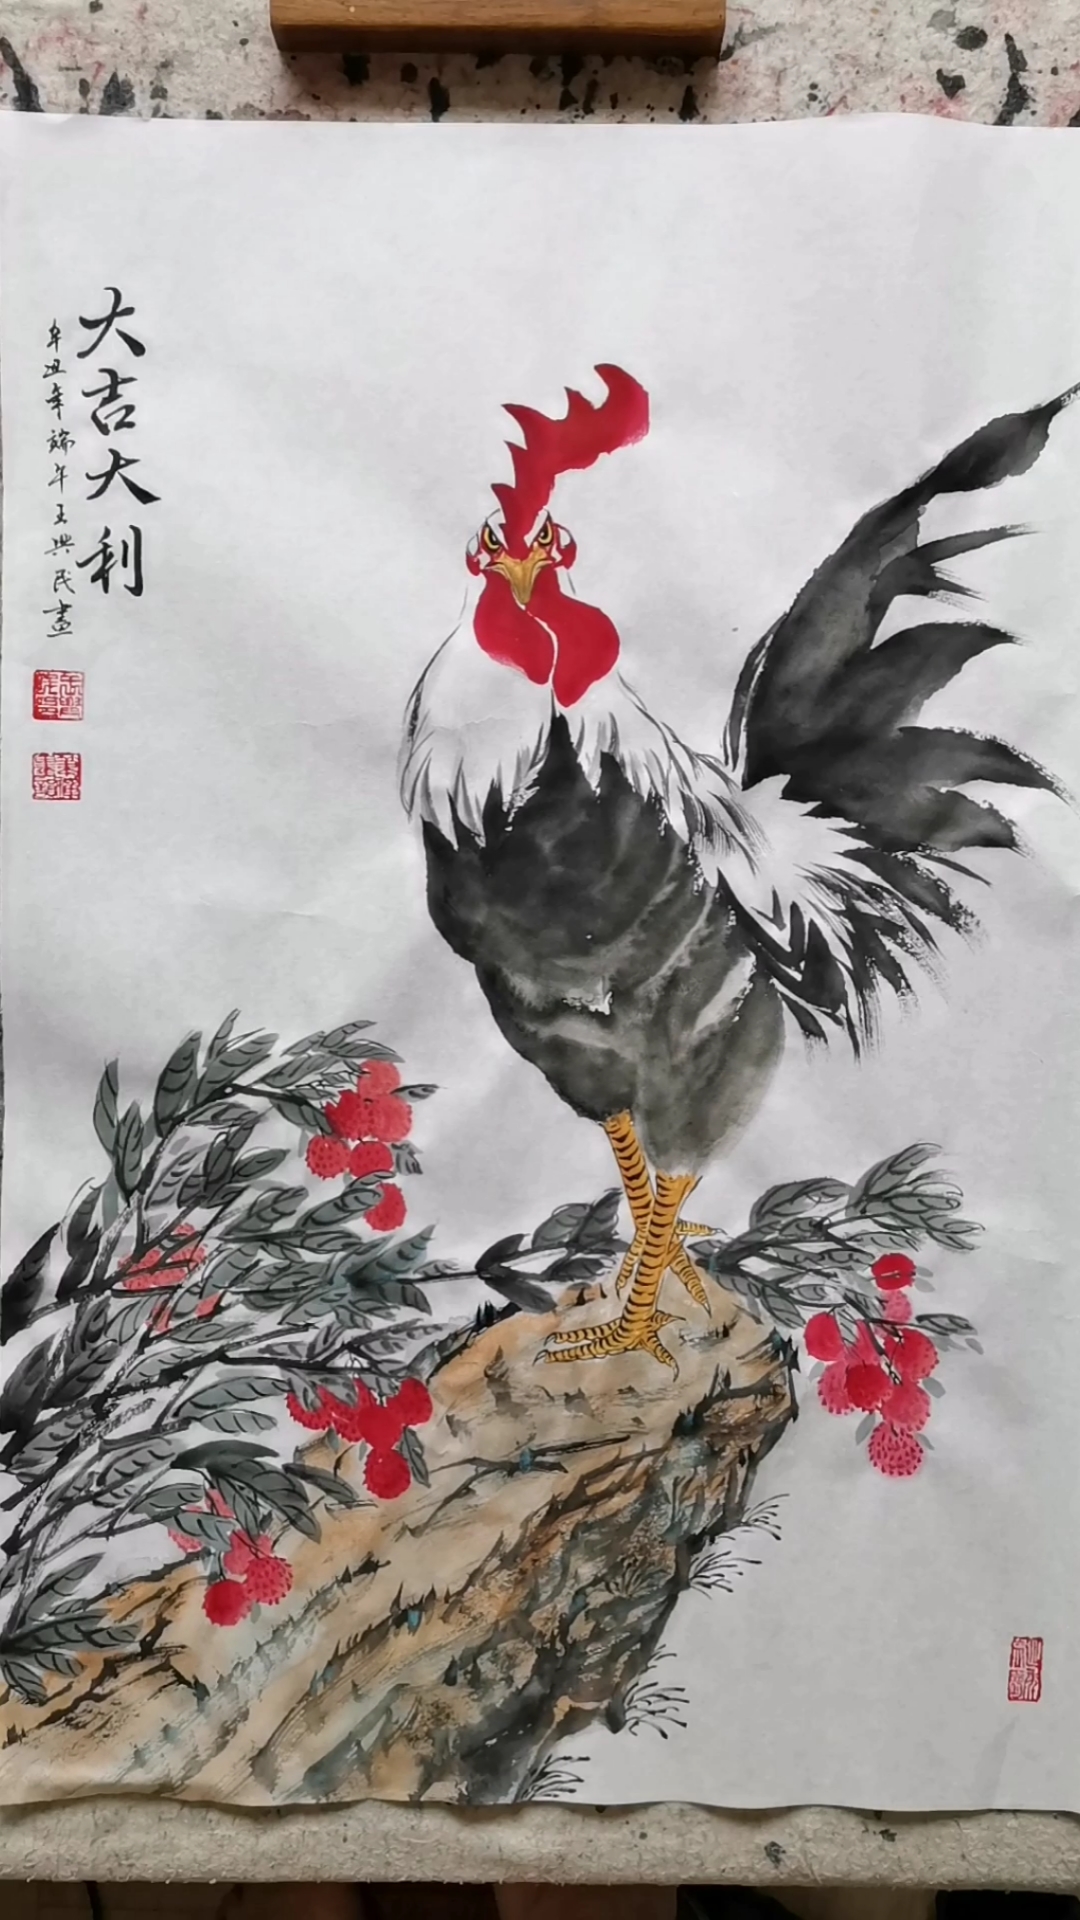 中国画#王兴民国画公鸡,祝大家端午快乐,吉祥安康!